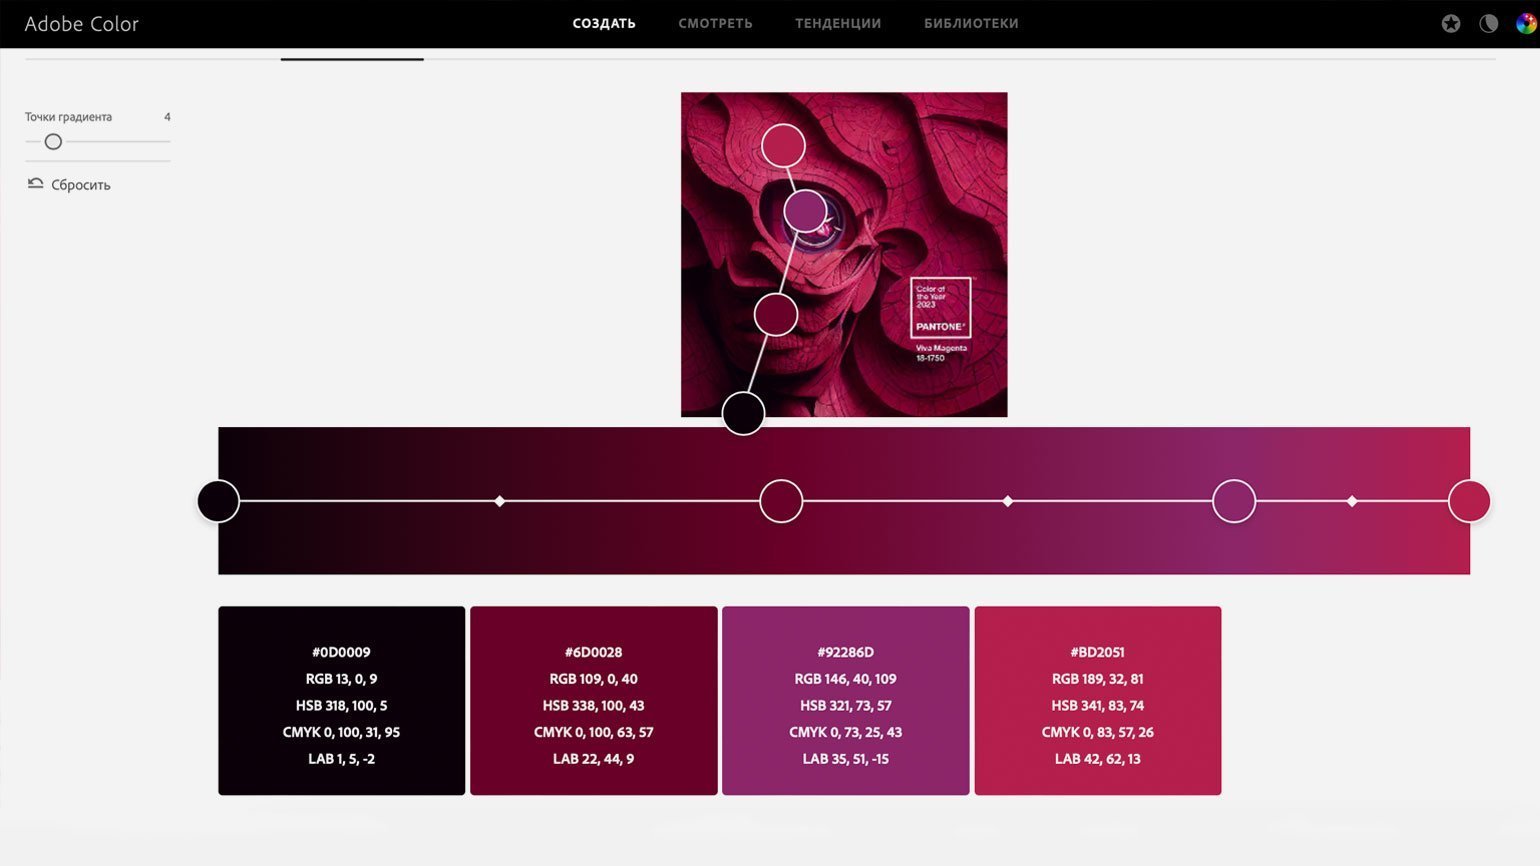 извлечение градиента на сайте Adobe Color из официальной картинки про цвет 2023 года по версии института Pantone